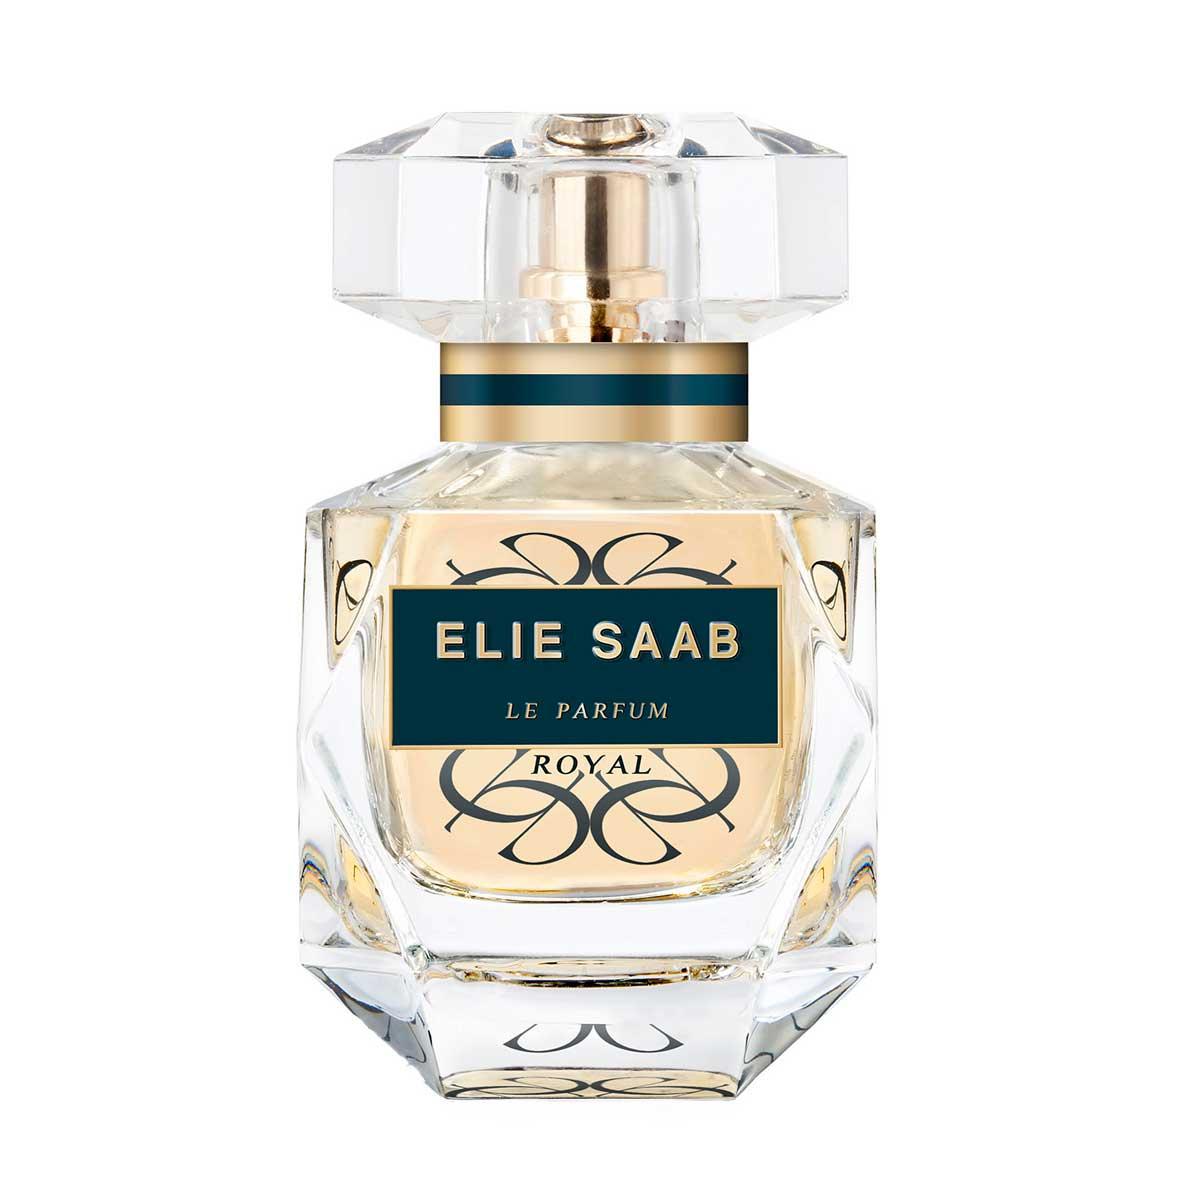 Elie Saab Le Parfum Royal Eau de Parfum 30ml | SEPHORA UK